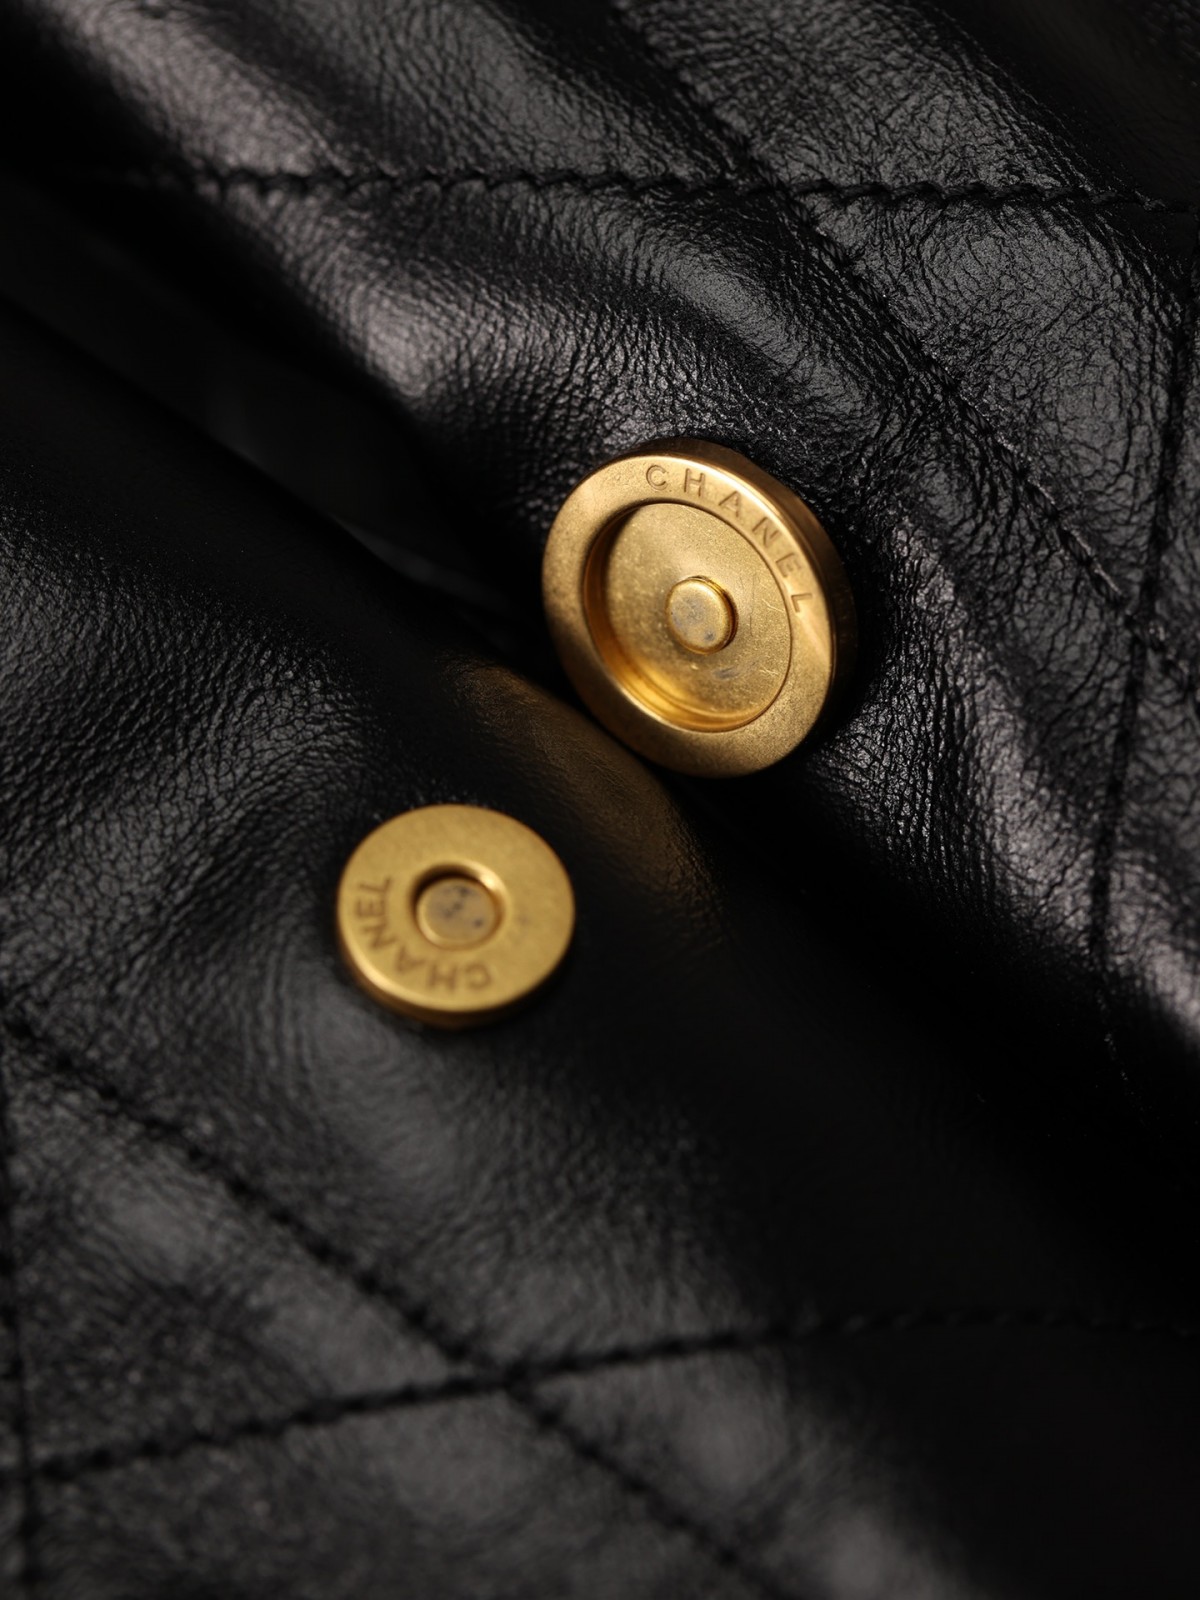 What is highest quality Chanel 22 bag looks like？（2023 Week 37）-အရည်အသွေးအကောင်းဆုံးအတု Louis Vuitton Bag အွန်လိုင်းစတိုး၊ ပုံစံတူဒီဇိုင်နာအိတ် ru